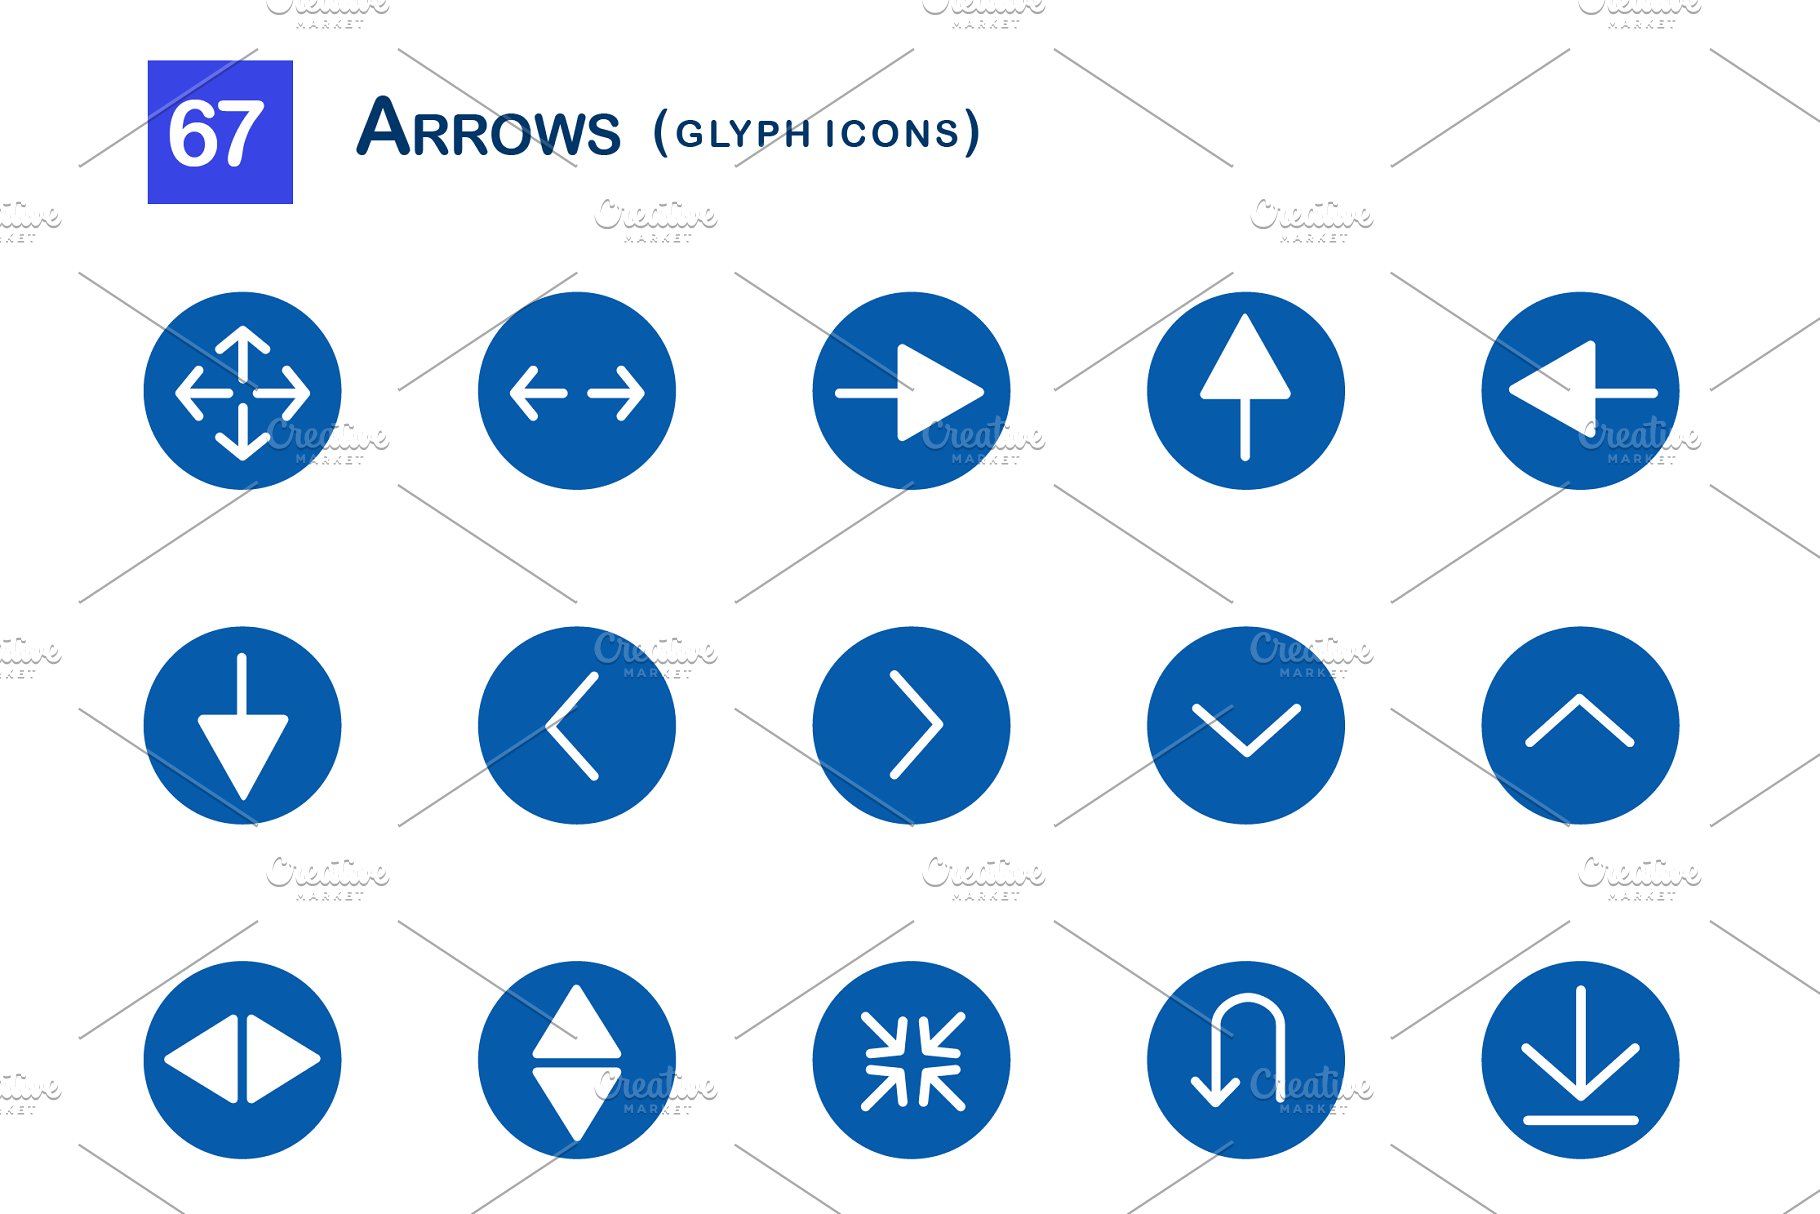 67个箭头字形图标 67 Arrows Glyph Icons插图(1)